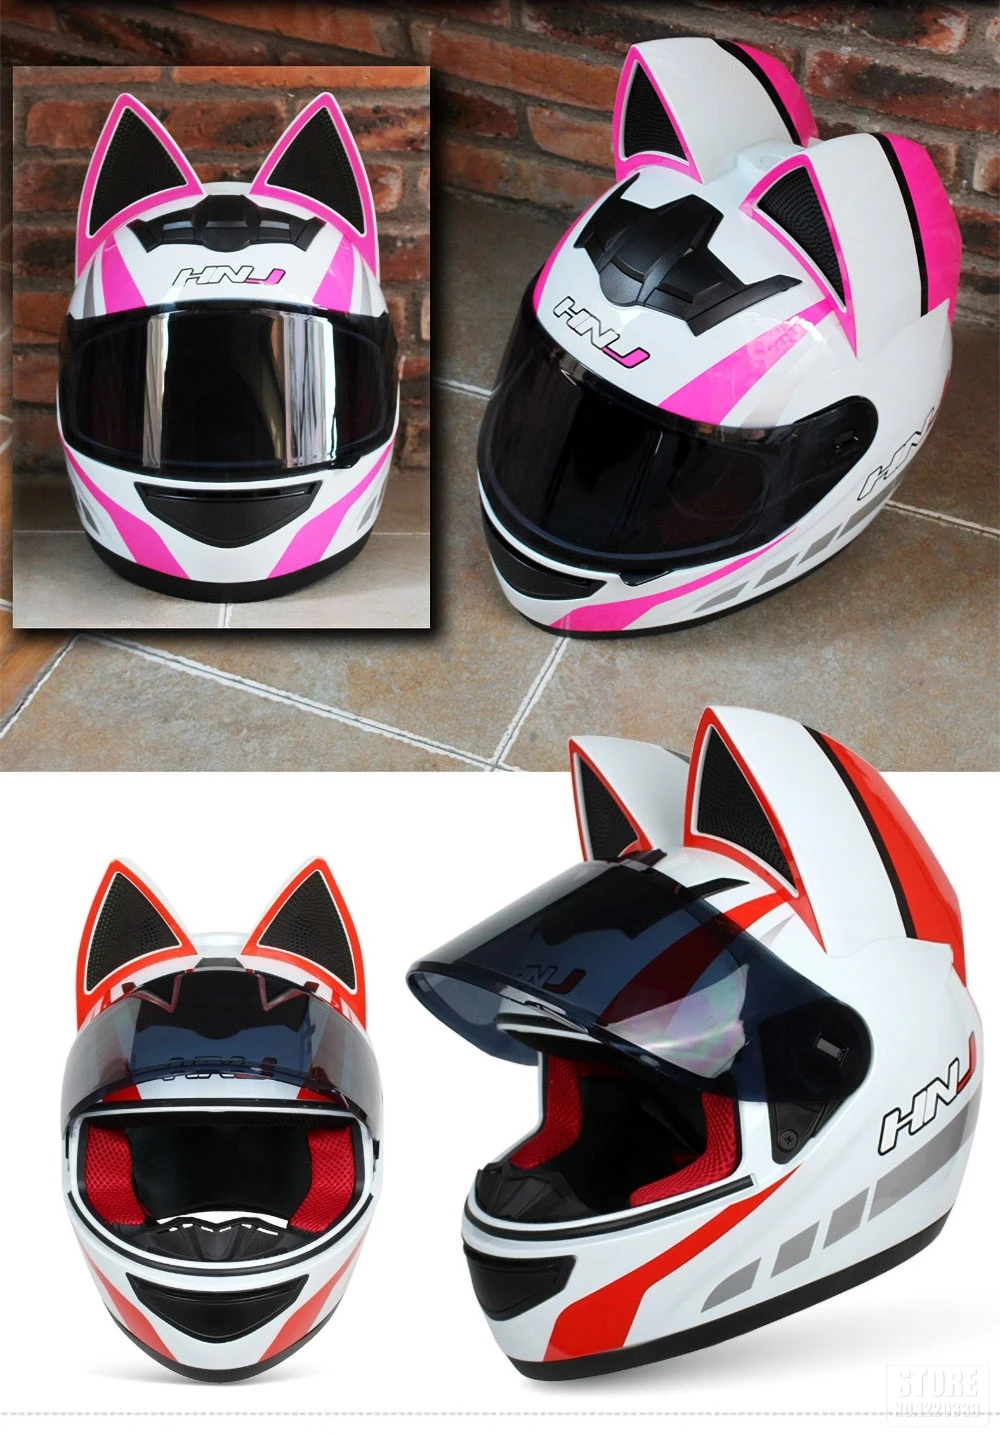 NITRINOS мотоциклетный шлем для женщин, мотоциклетный шлем, мотоциклетный шлем с ушами, индивидуальный Полнолицевой мотоциклетный шлем, 4 цвета, розовый, желтый, черный, белый